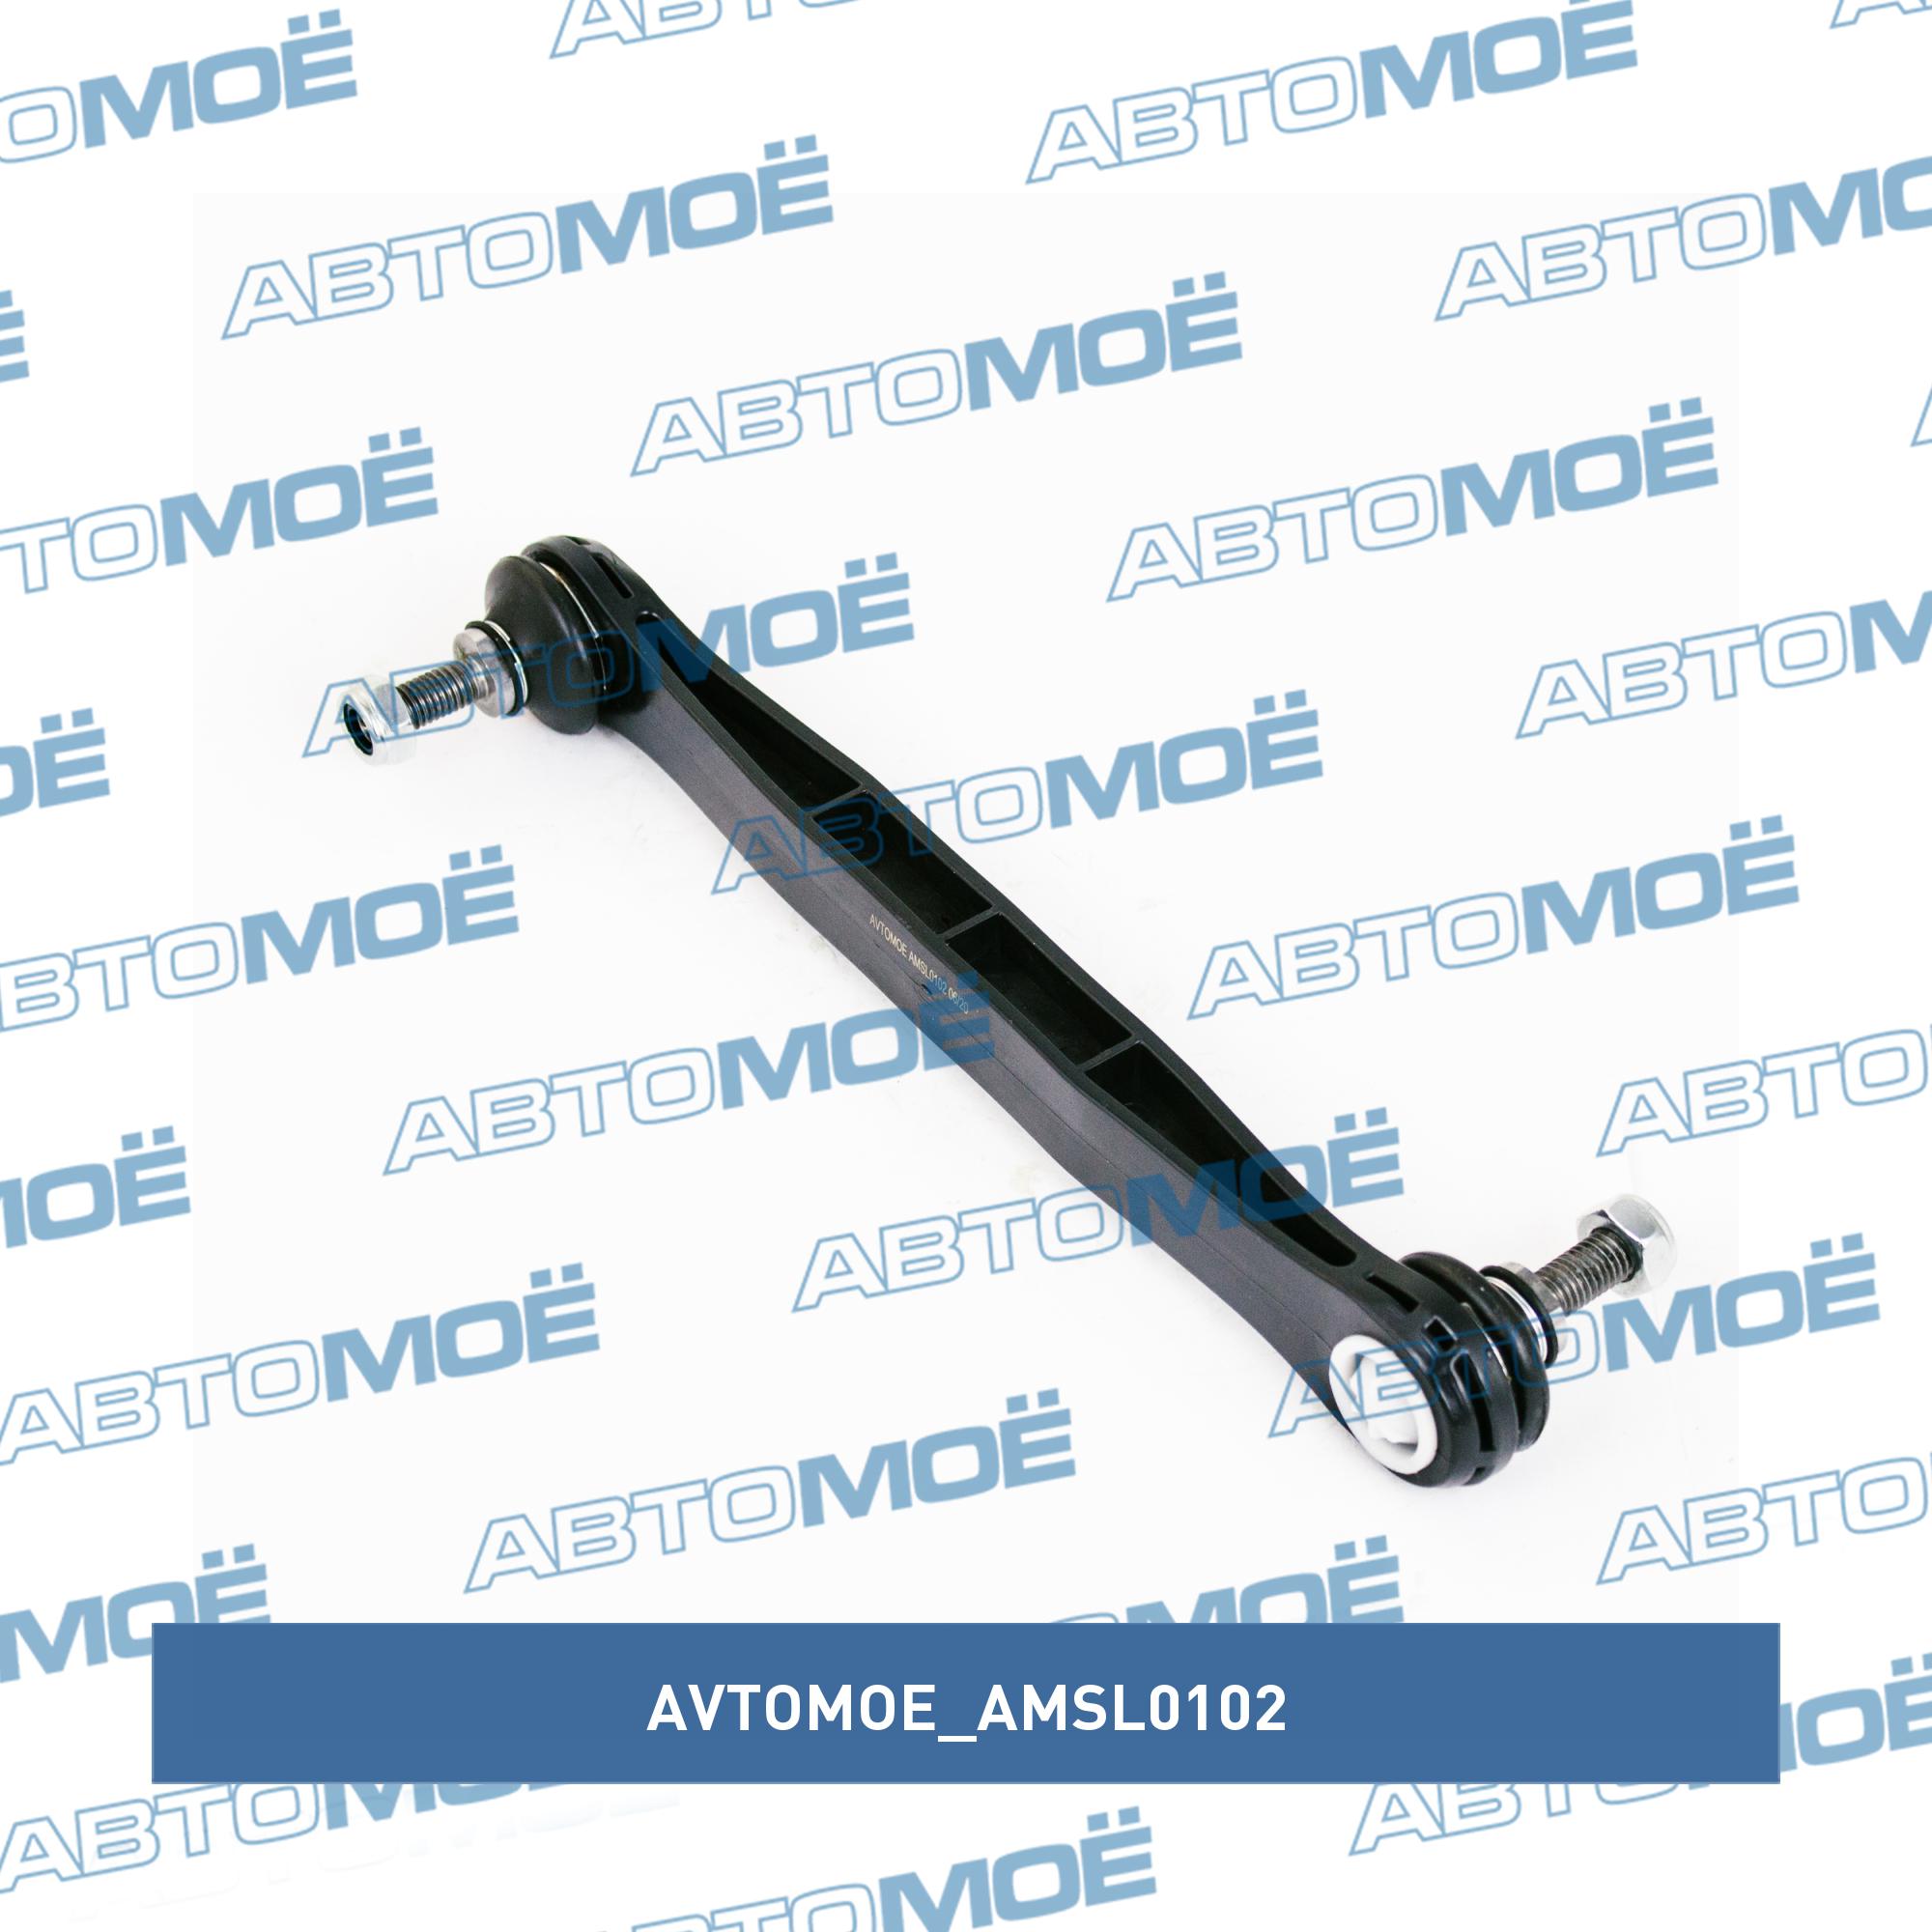 Стойка стабилизатора переднего AVTOMOE AMSL0102